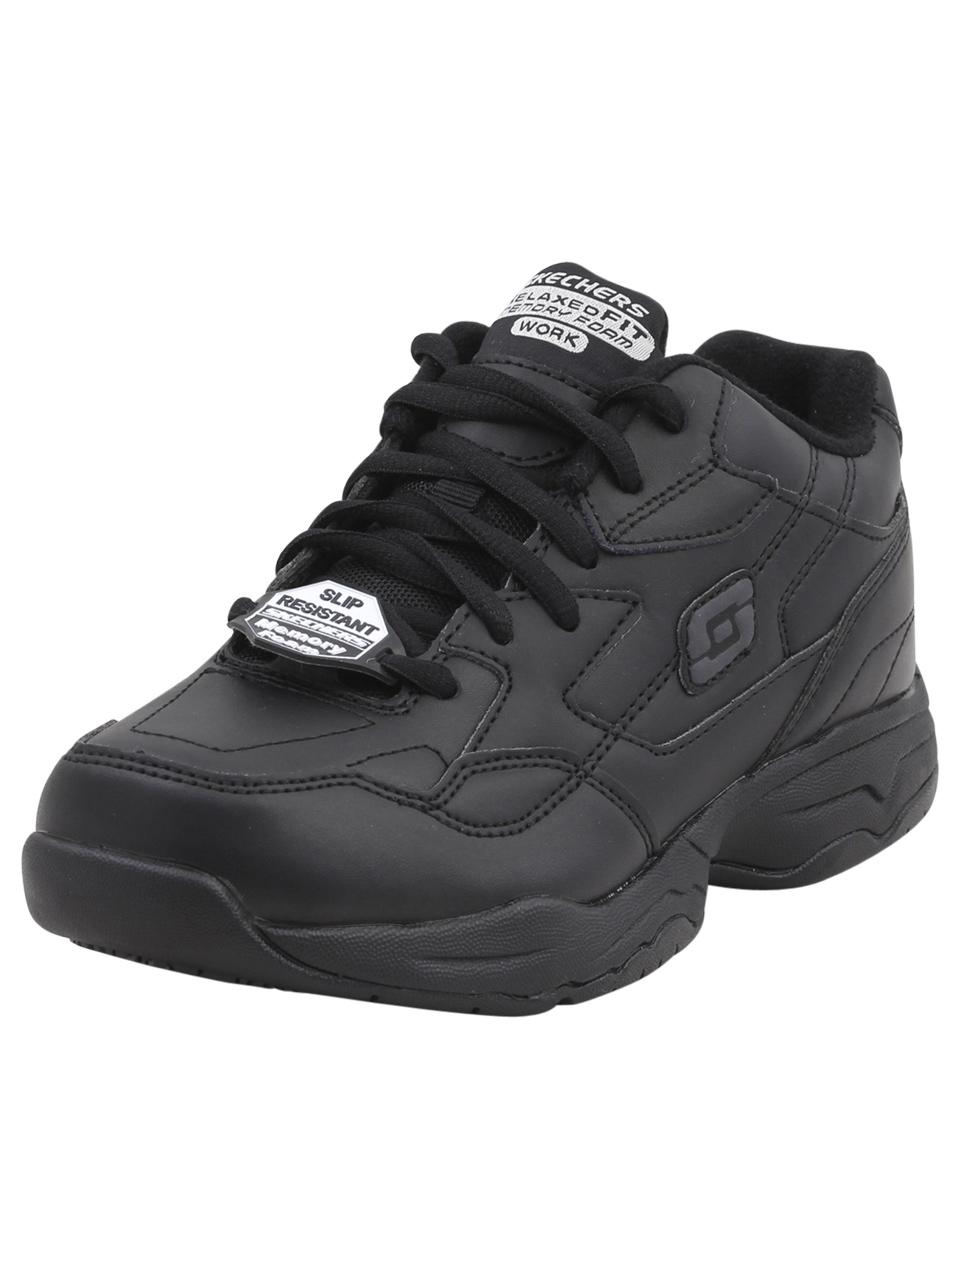 Skechers Work Women's Felton Albie Memory Foam Slip Resistant Sneakers Shoes - Black - 9 B(M) US